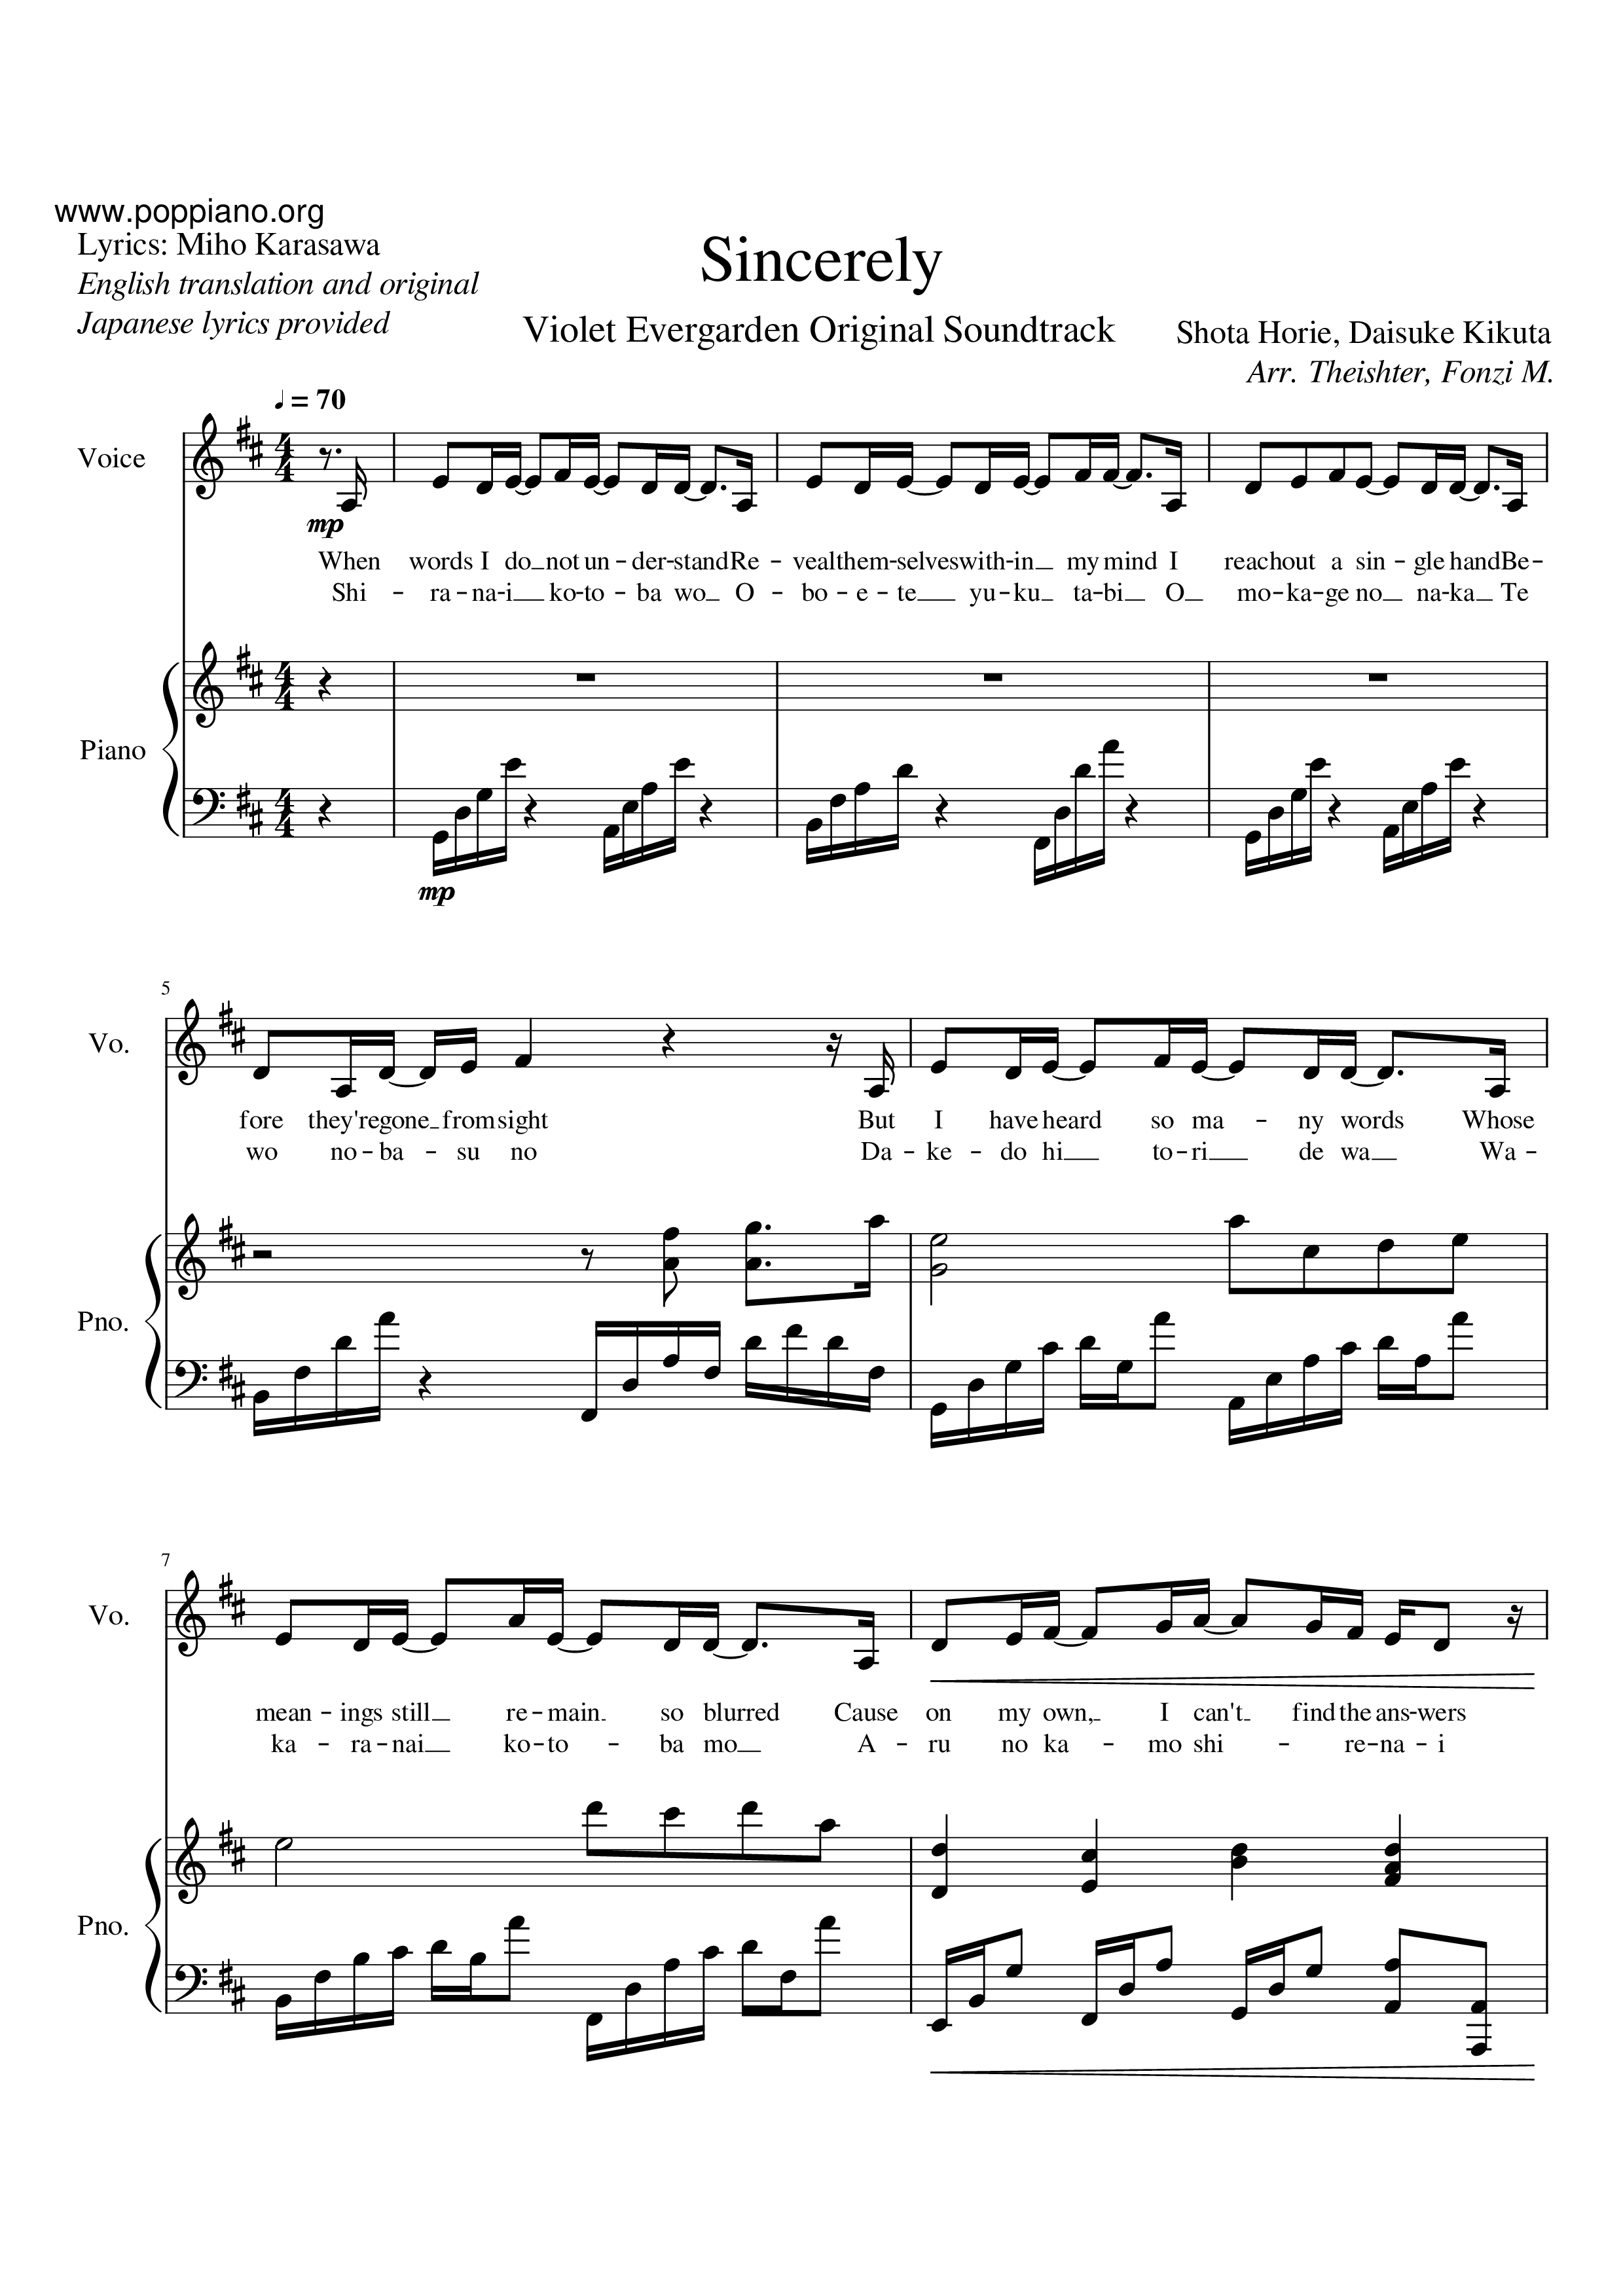 Violet Evergarden - Sincerelyピアノ譜